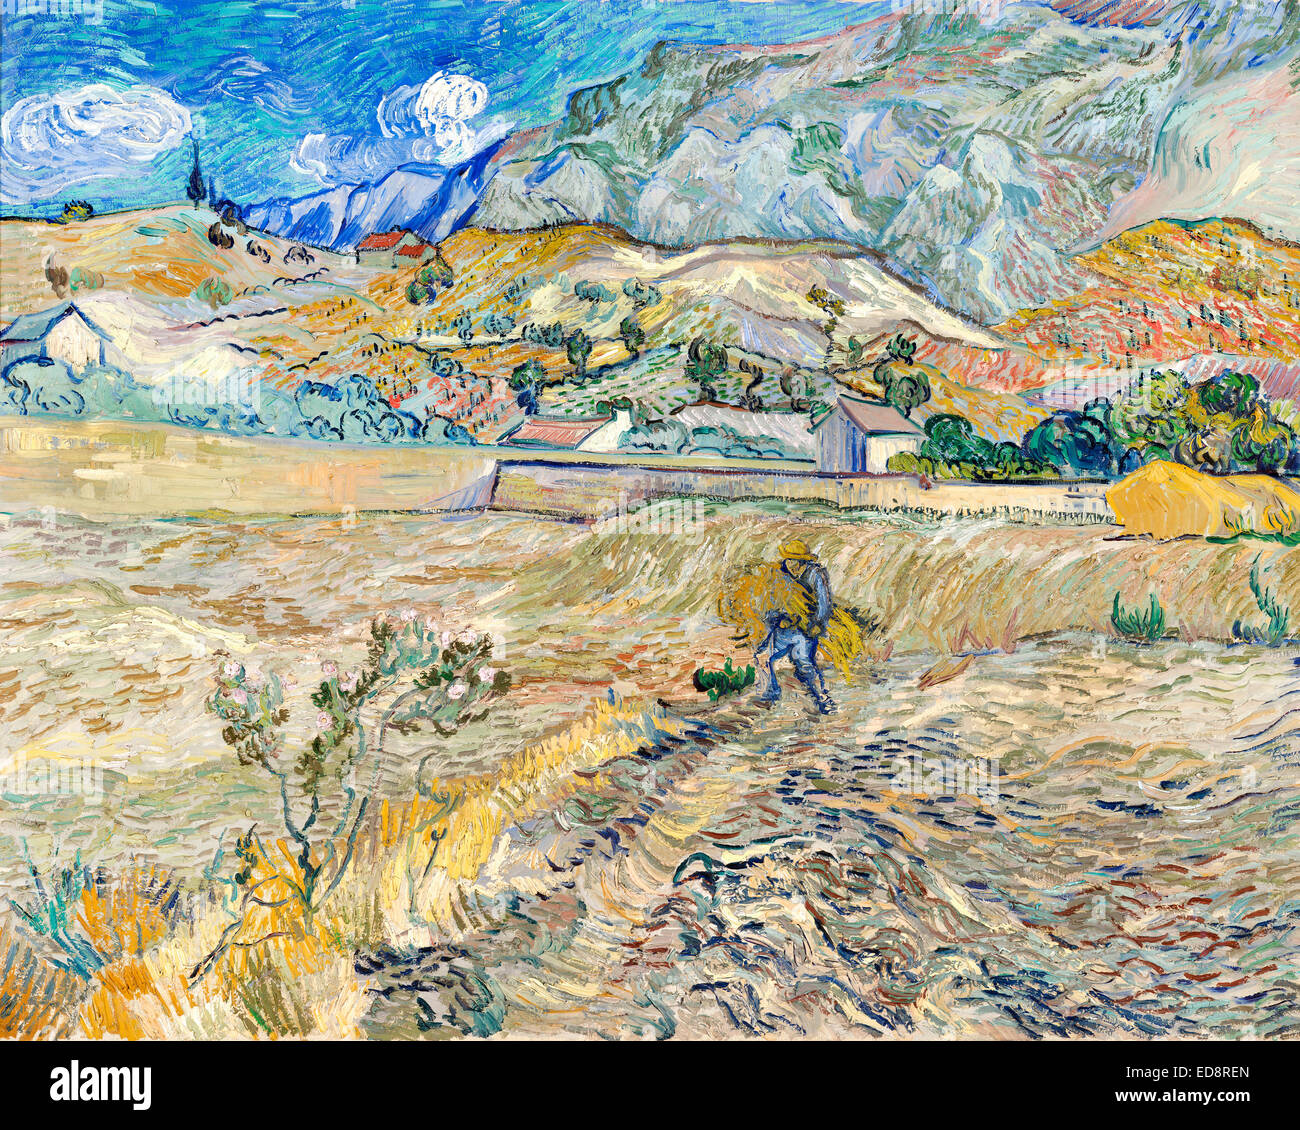 Vincent Van Gogh, eingeschlossen Weizenfeld mit Bauer (Landschaft bei Saint-Remy) 1889 Öl auf Leinwand. Indianapolis Museum of Art, USA Stockfoto